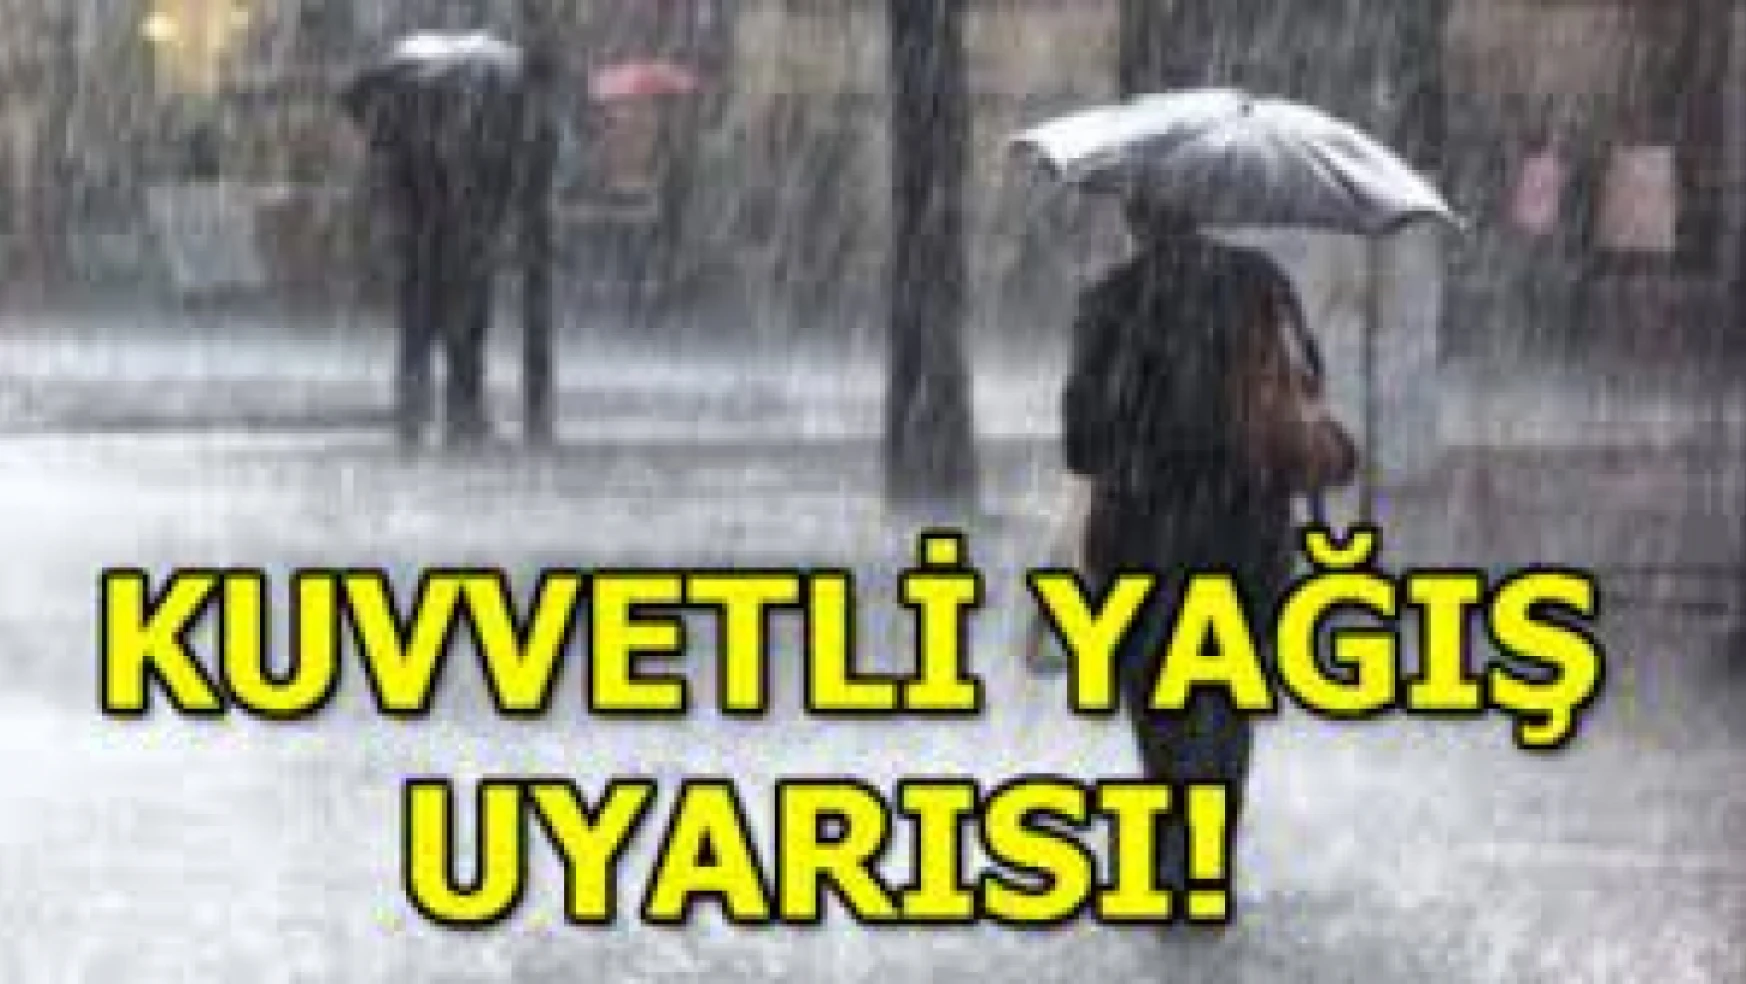 Malatya'da Kuvvetli Sağanak Yağış Bekleniyor!